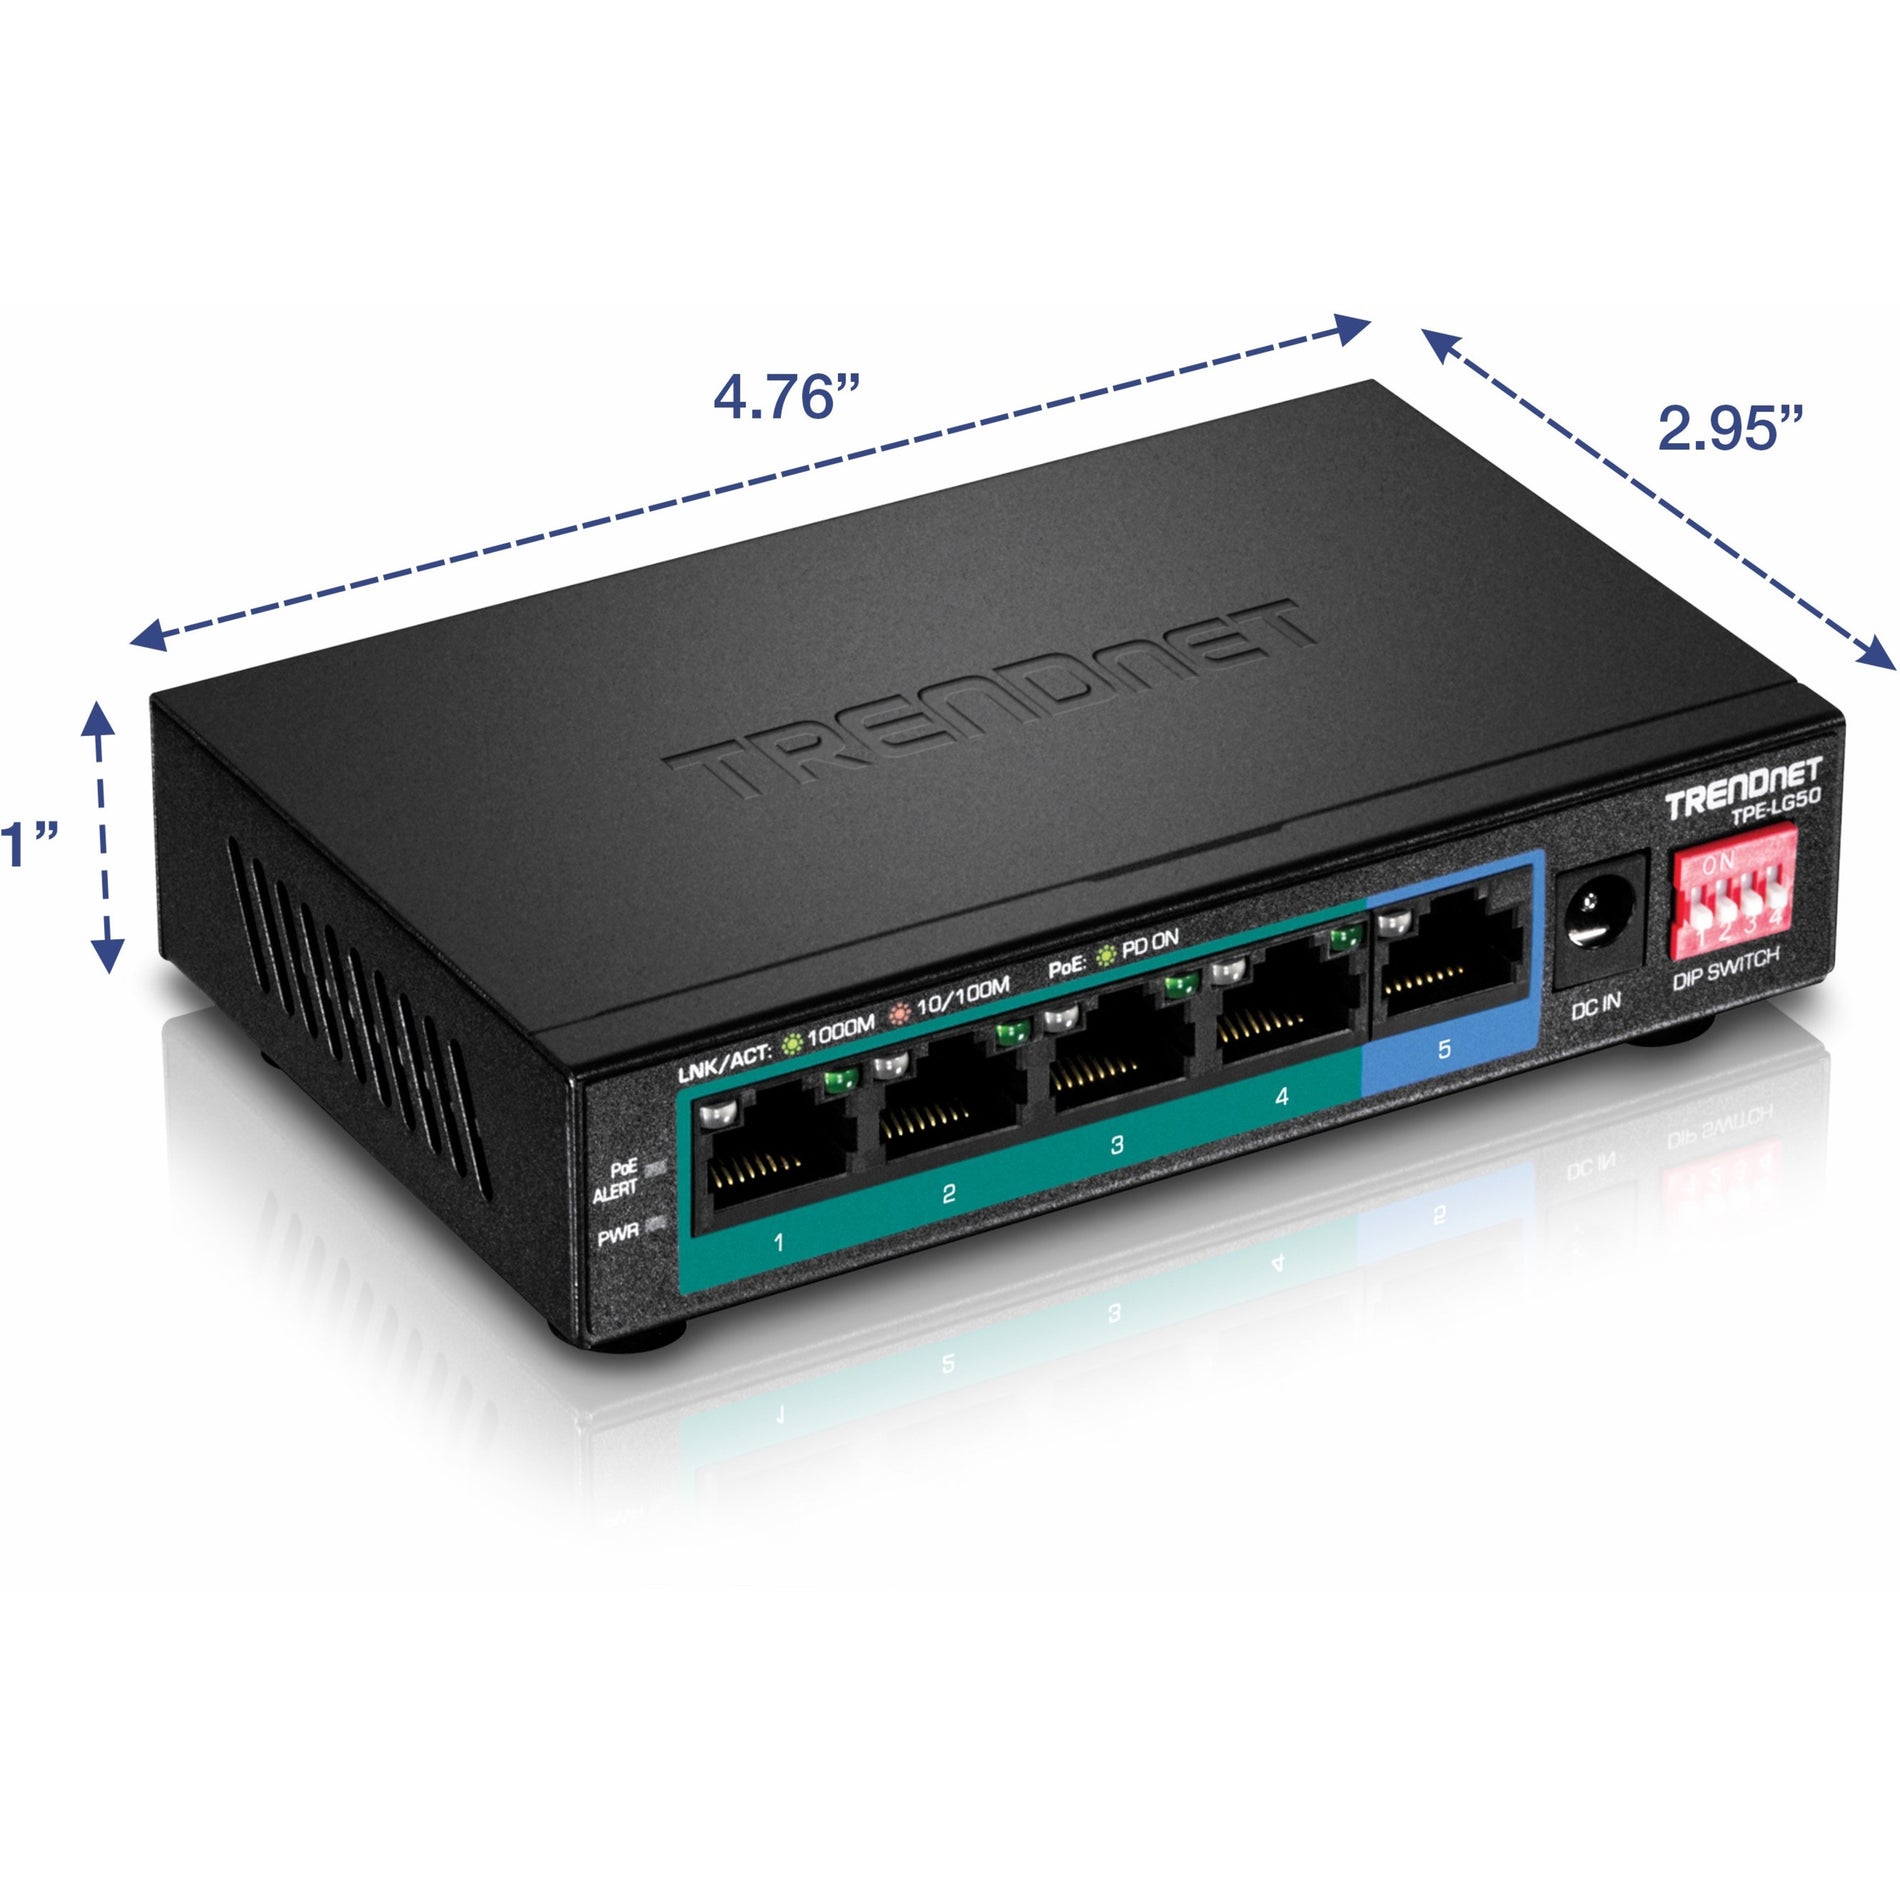 TRENDnet TPE-LG50 Commutateur PoE + gigabit à 5 ports longue portée étend PoE+ de 200m (656 ft) Protection à vie